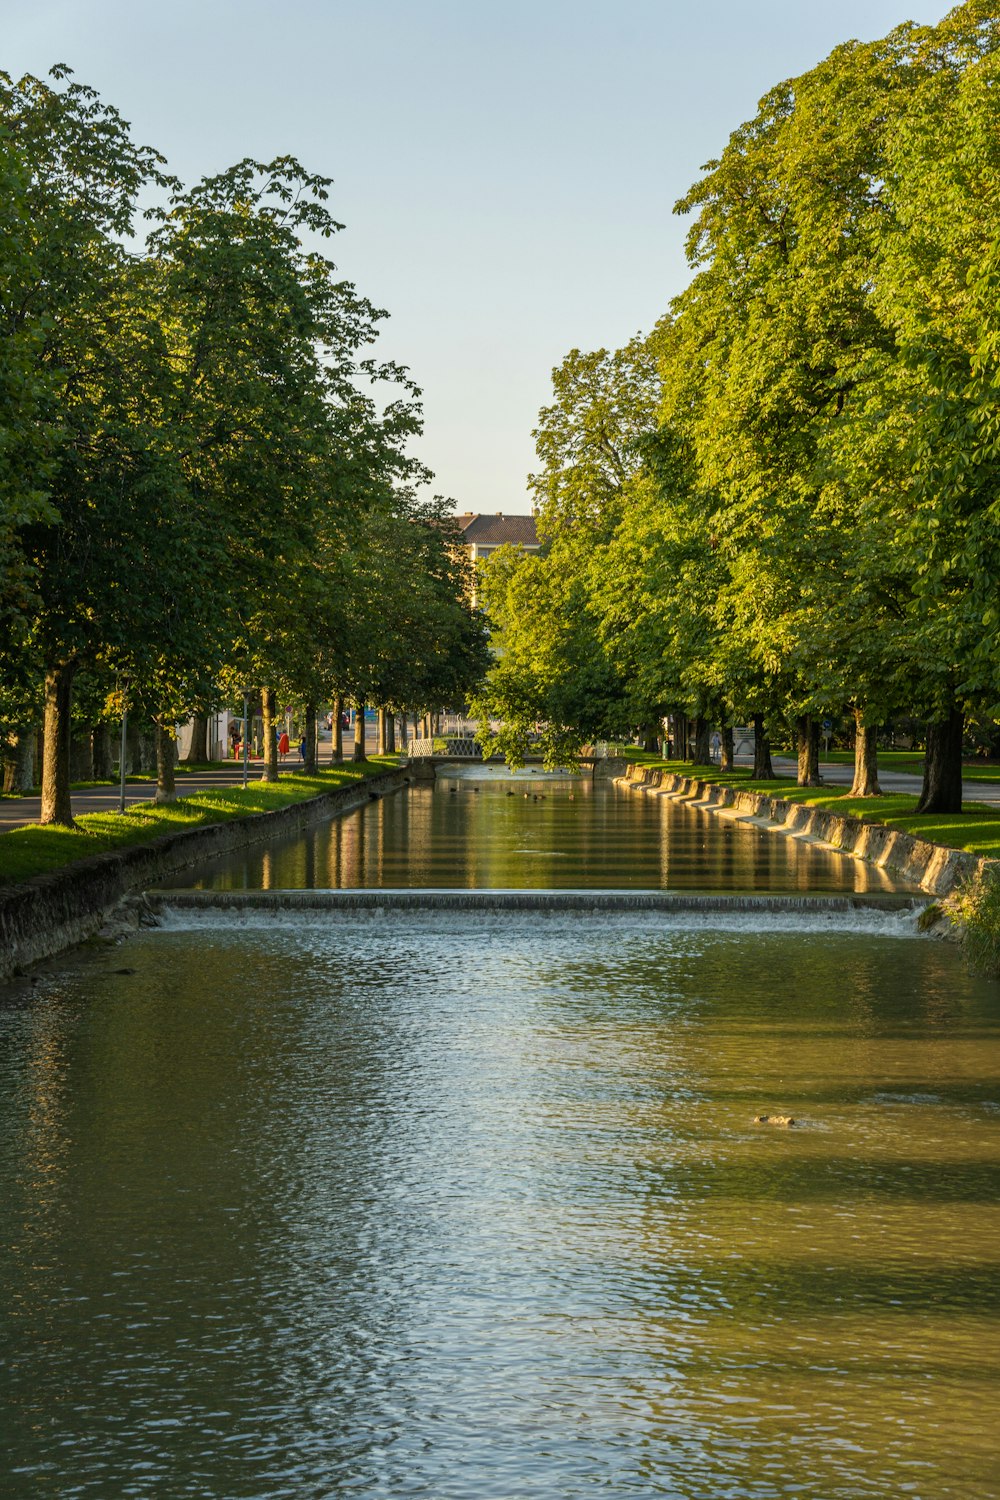 a river running through a lush green park